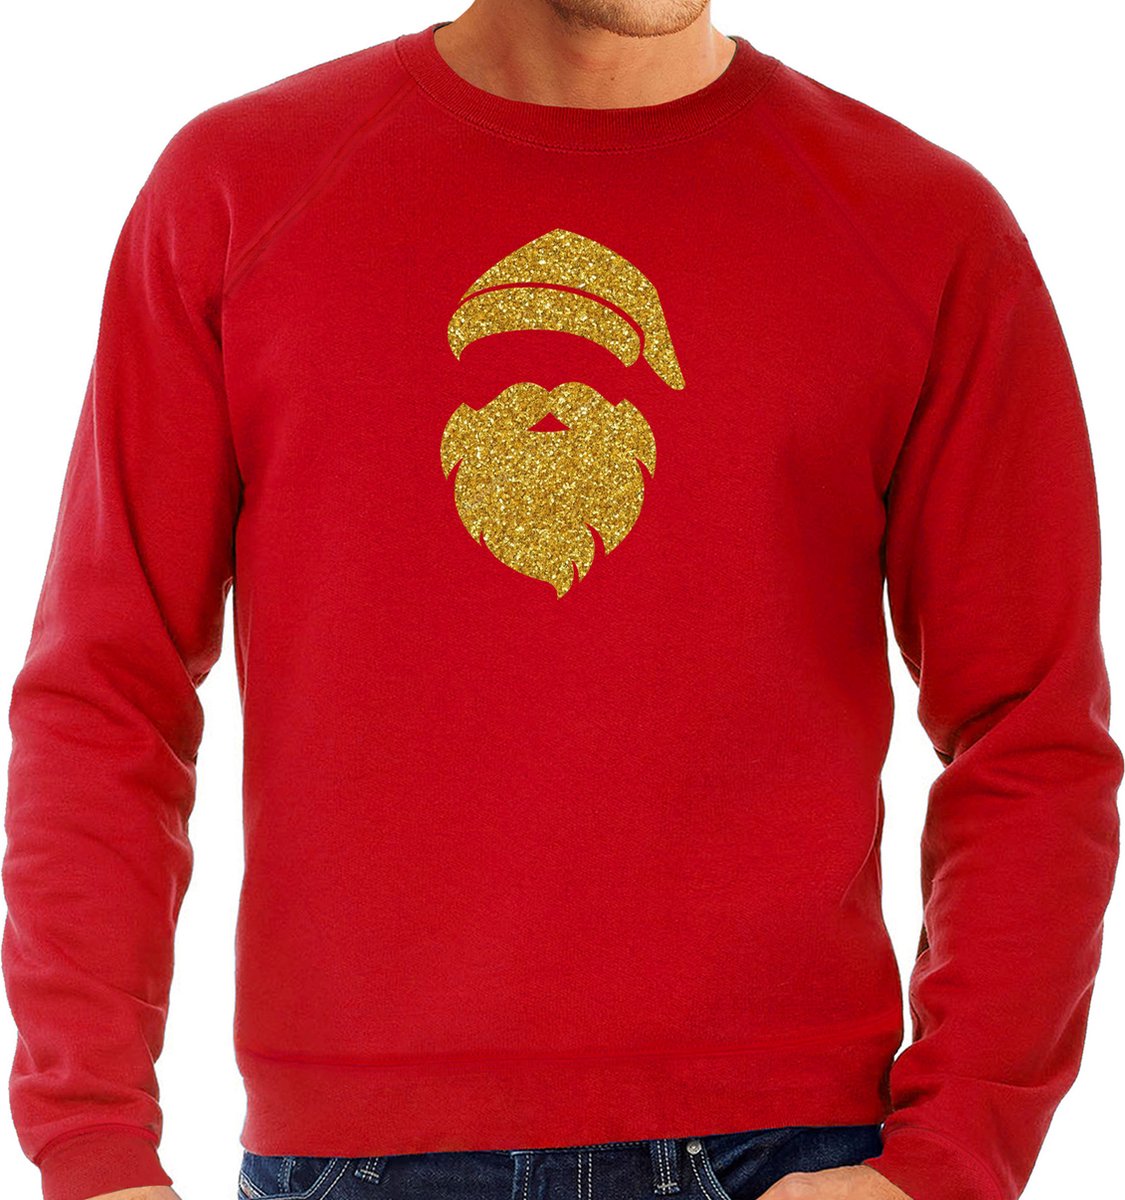 Kerstman hoofd Kerst trui - rood met gouden glitter bedrukking - heren - Kerst sweaters / Kerst outfit XXL